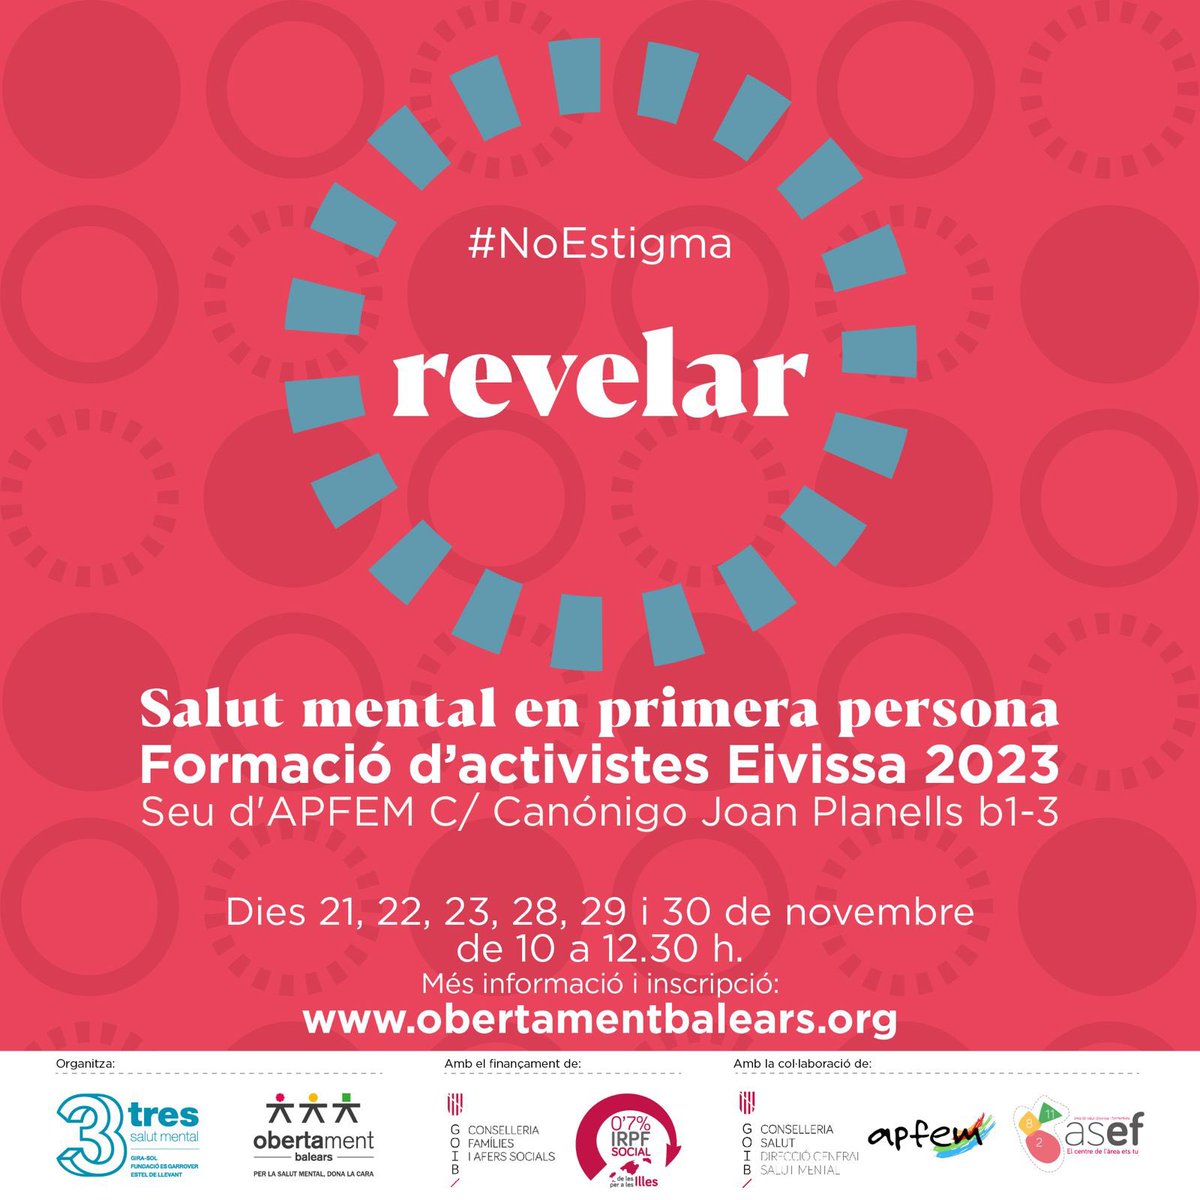 Formació d’activistes #EnPrimeraPersona #EnSalutMental aquest mes de novembre a Eivissa 
👉 Més info i inscripció a: obertamentbalears.org
#NoEstigma #ObertamentBalears #IRPFSocial @GOIB_Social @OSMIB_IBSalut @APFEM @SalutGOIB